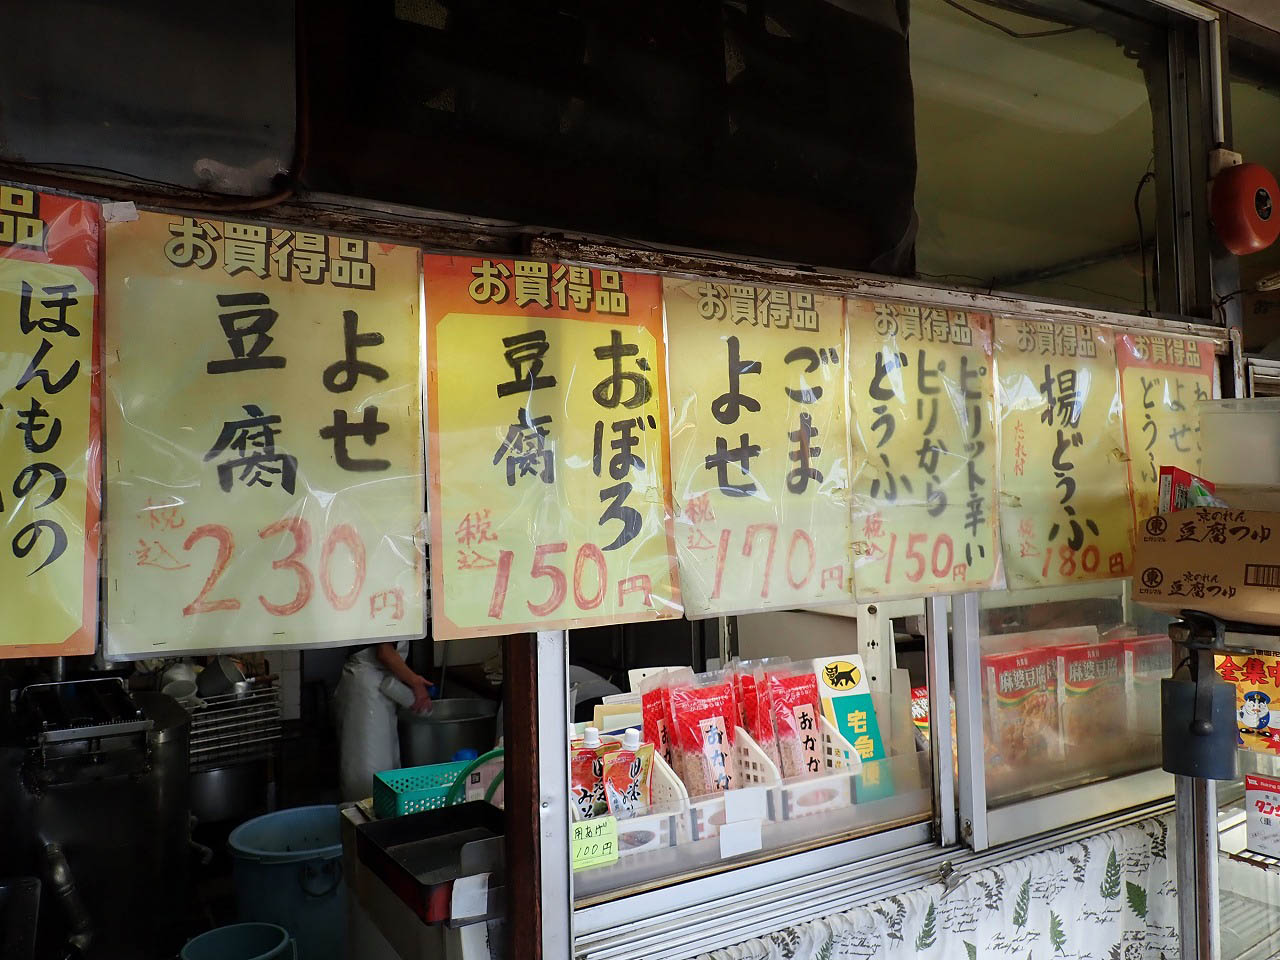 川越の美味しい豆腐屋さん『和泉屋豆腐店』